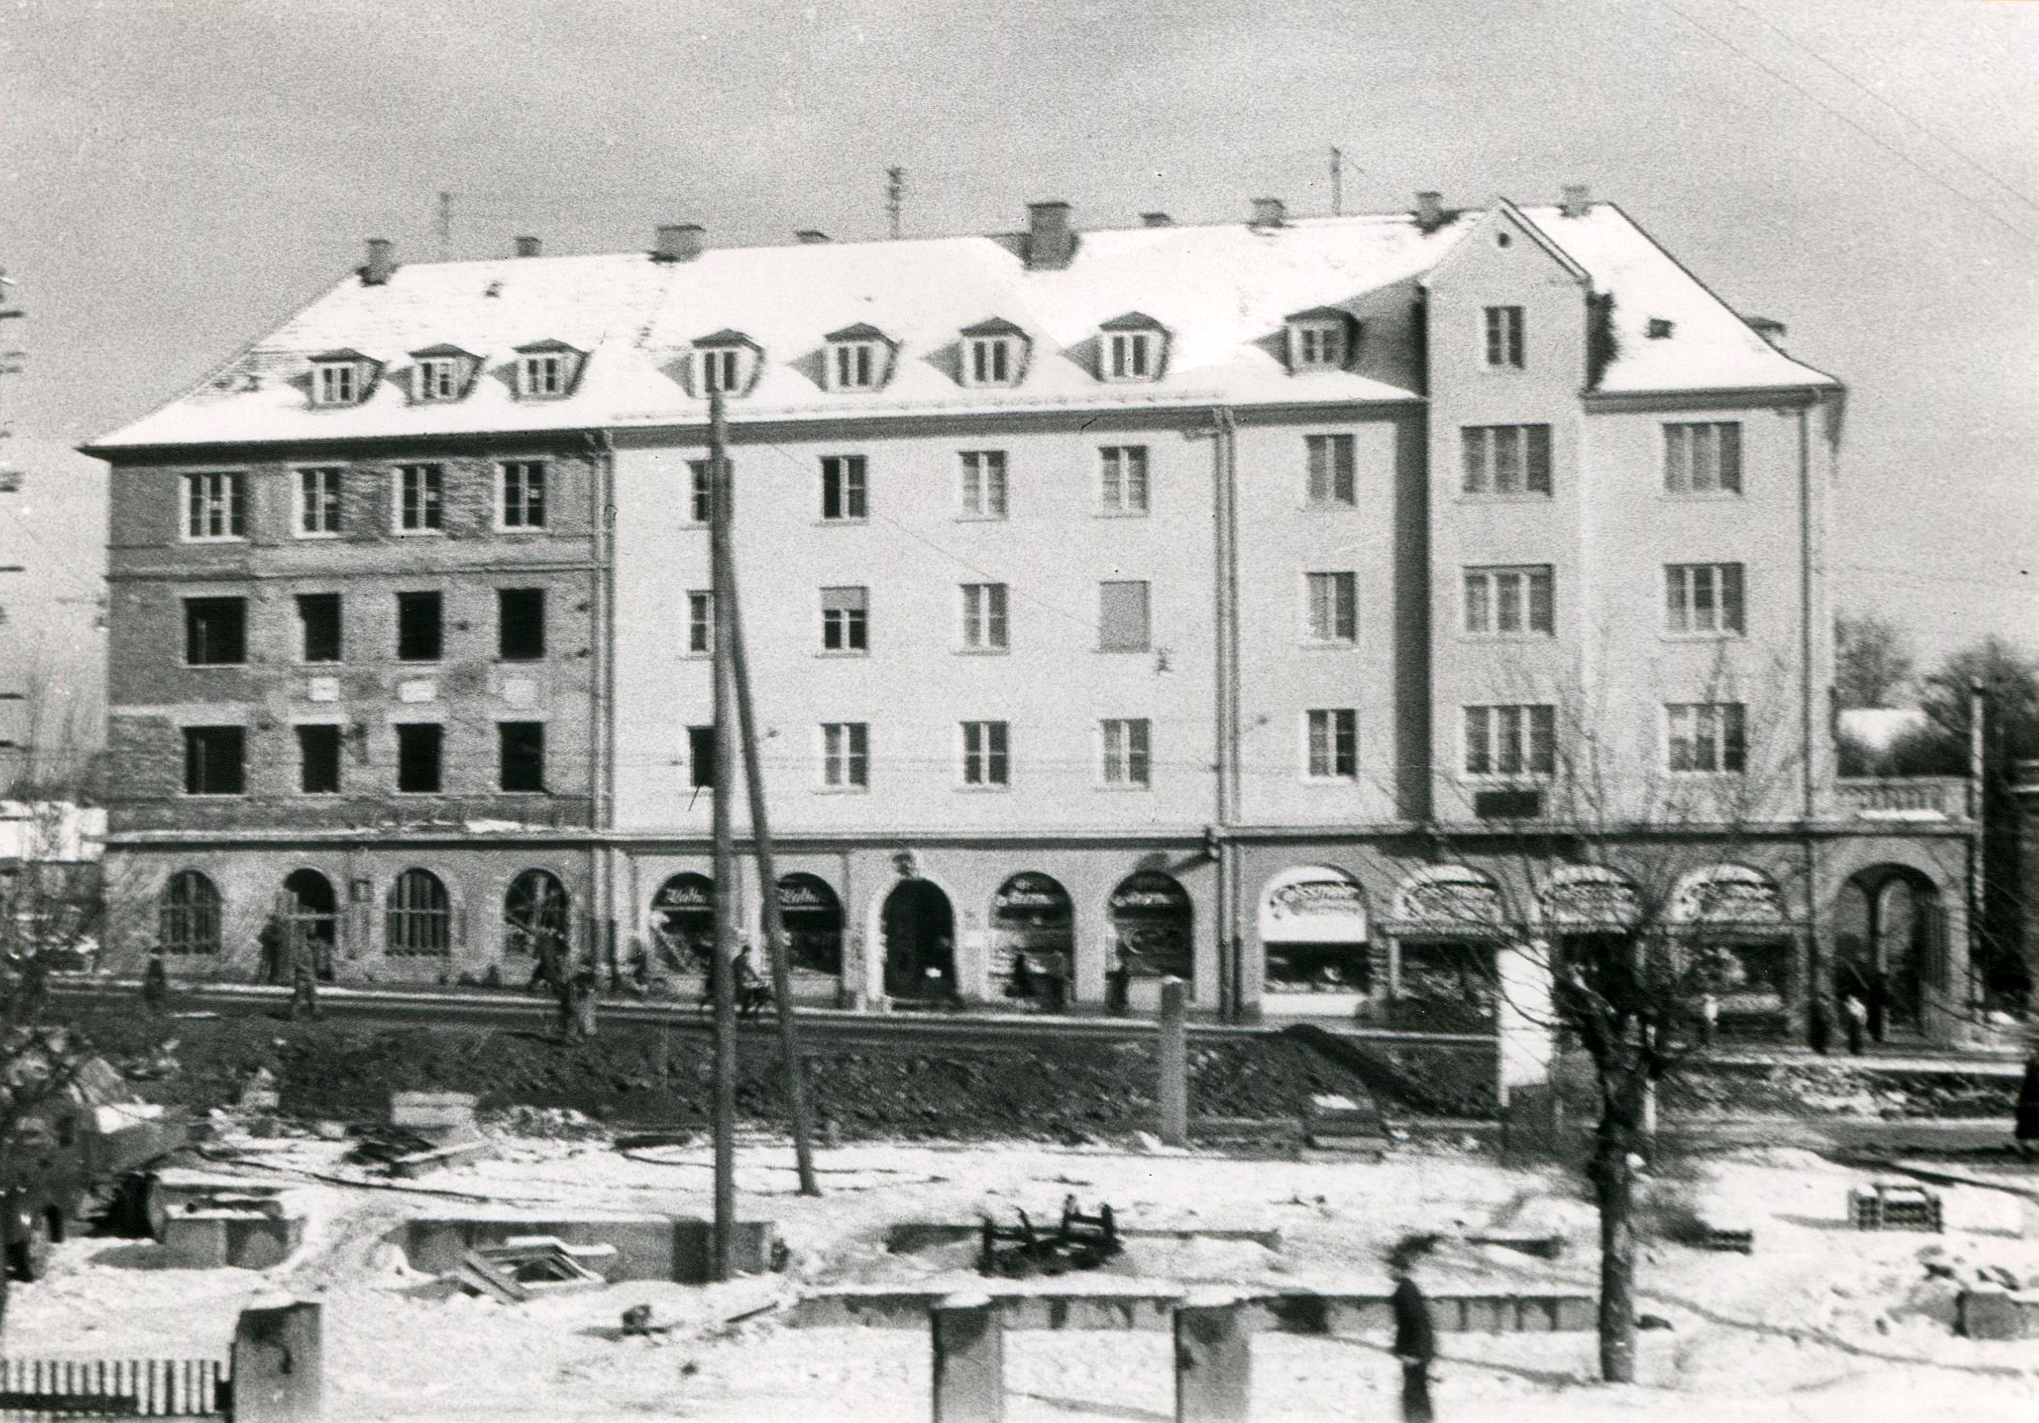 Wiederaufgebaute Gebäude, linkes Eckhaus noch im Rohbau, Karl Gaissmaier jetzt im südlichen Gebäude, 1950, StANU, Sammlung Mangold